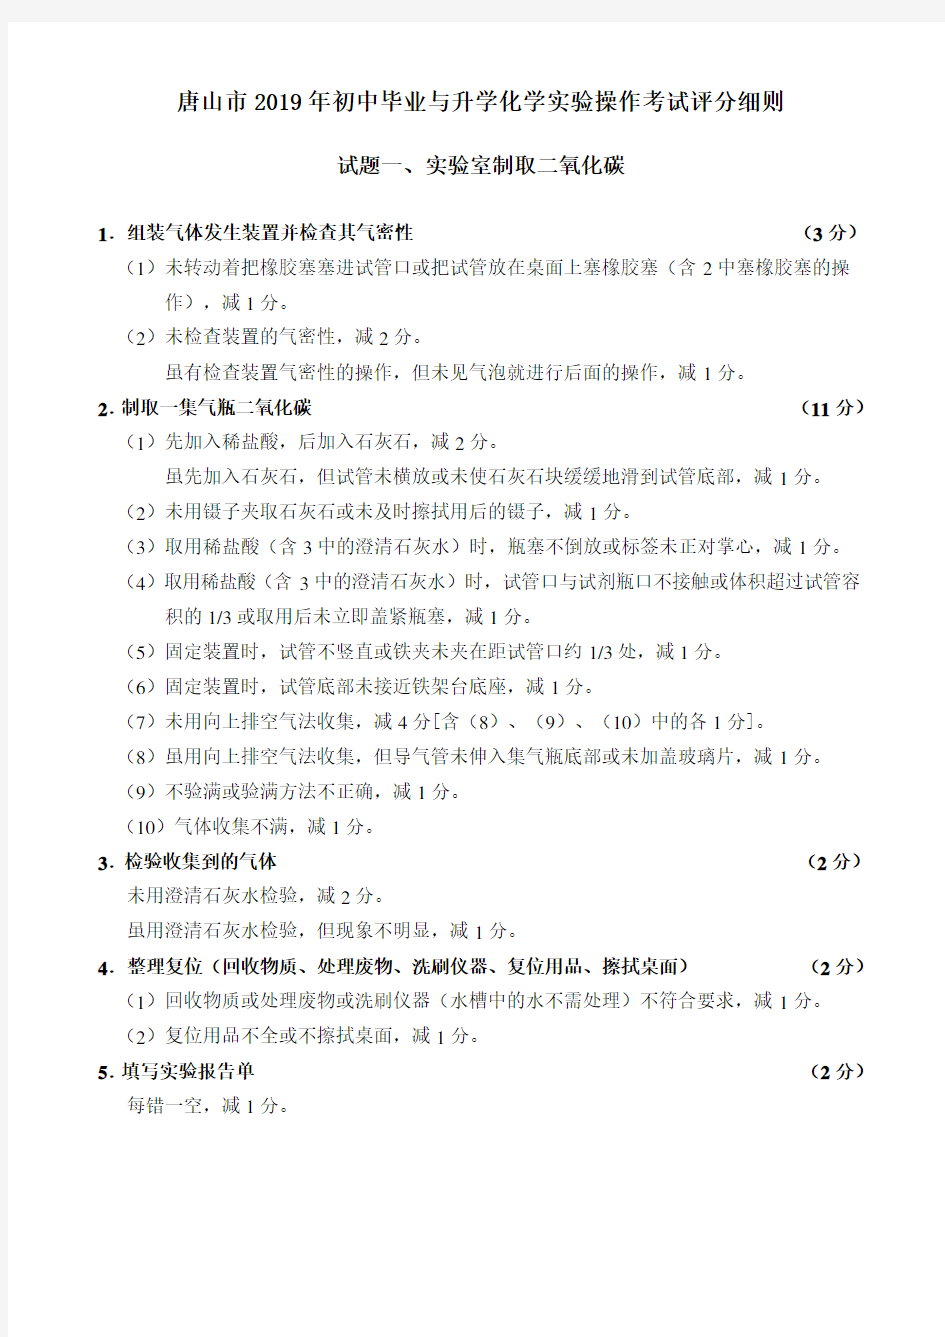 唐山市2019年初中毕业与升学化学实验操作考试评分细则